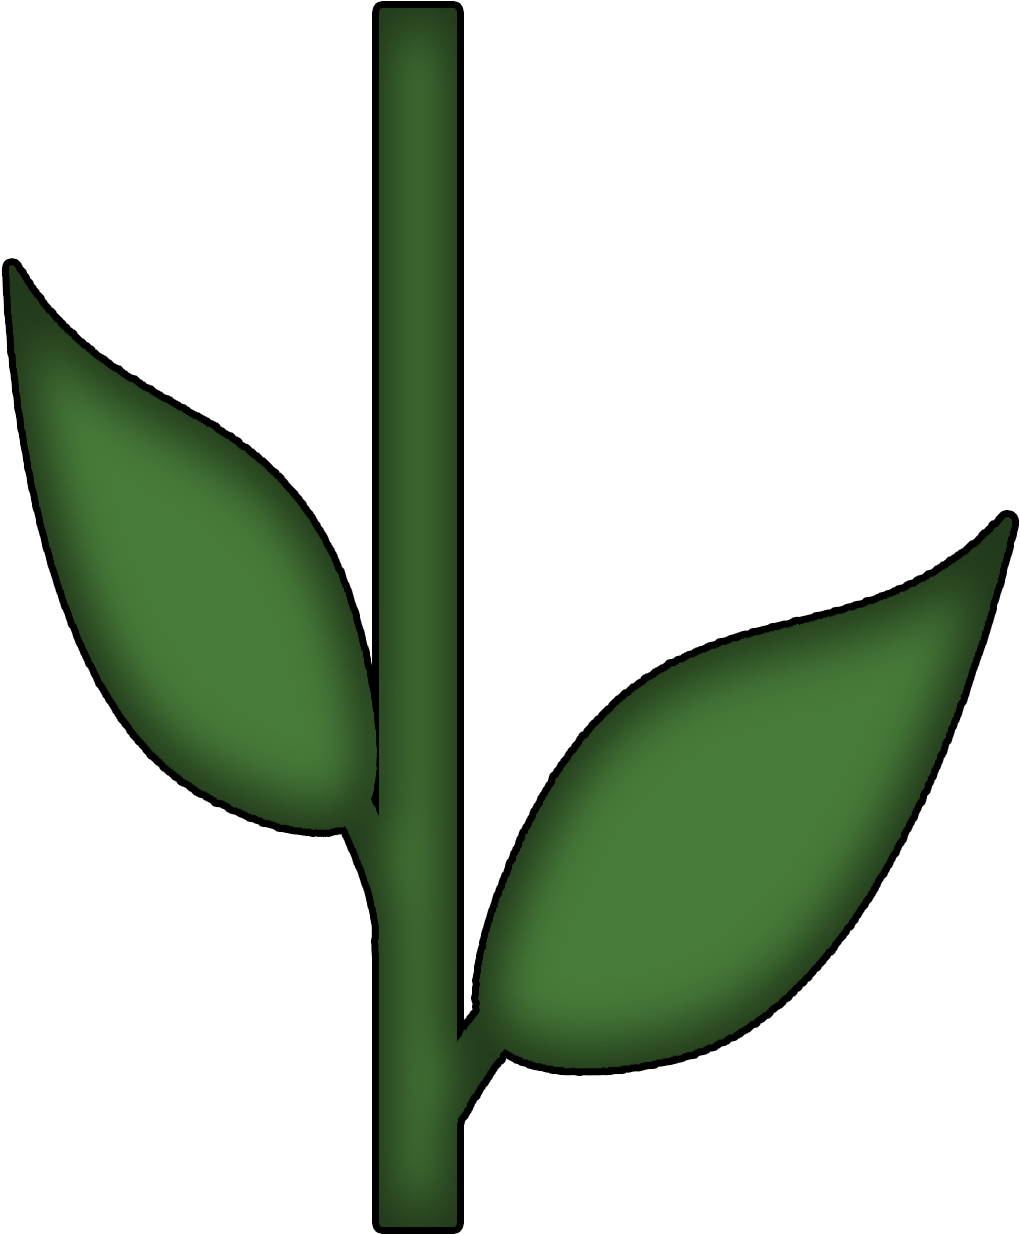 Flower Stem And Leaf (1074x1314)